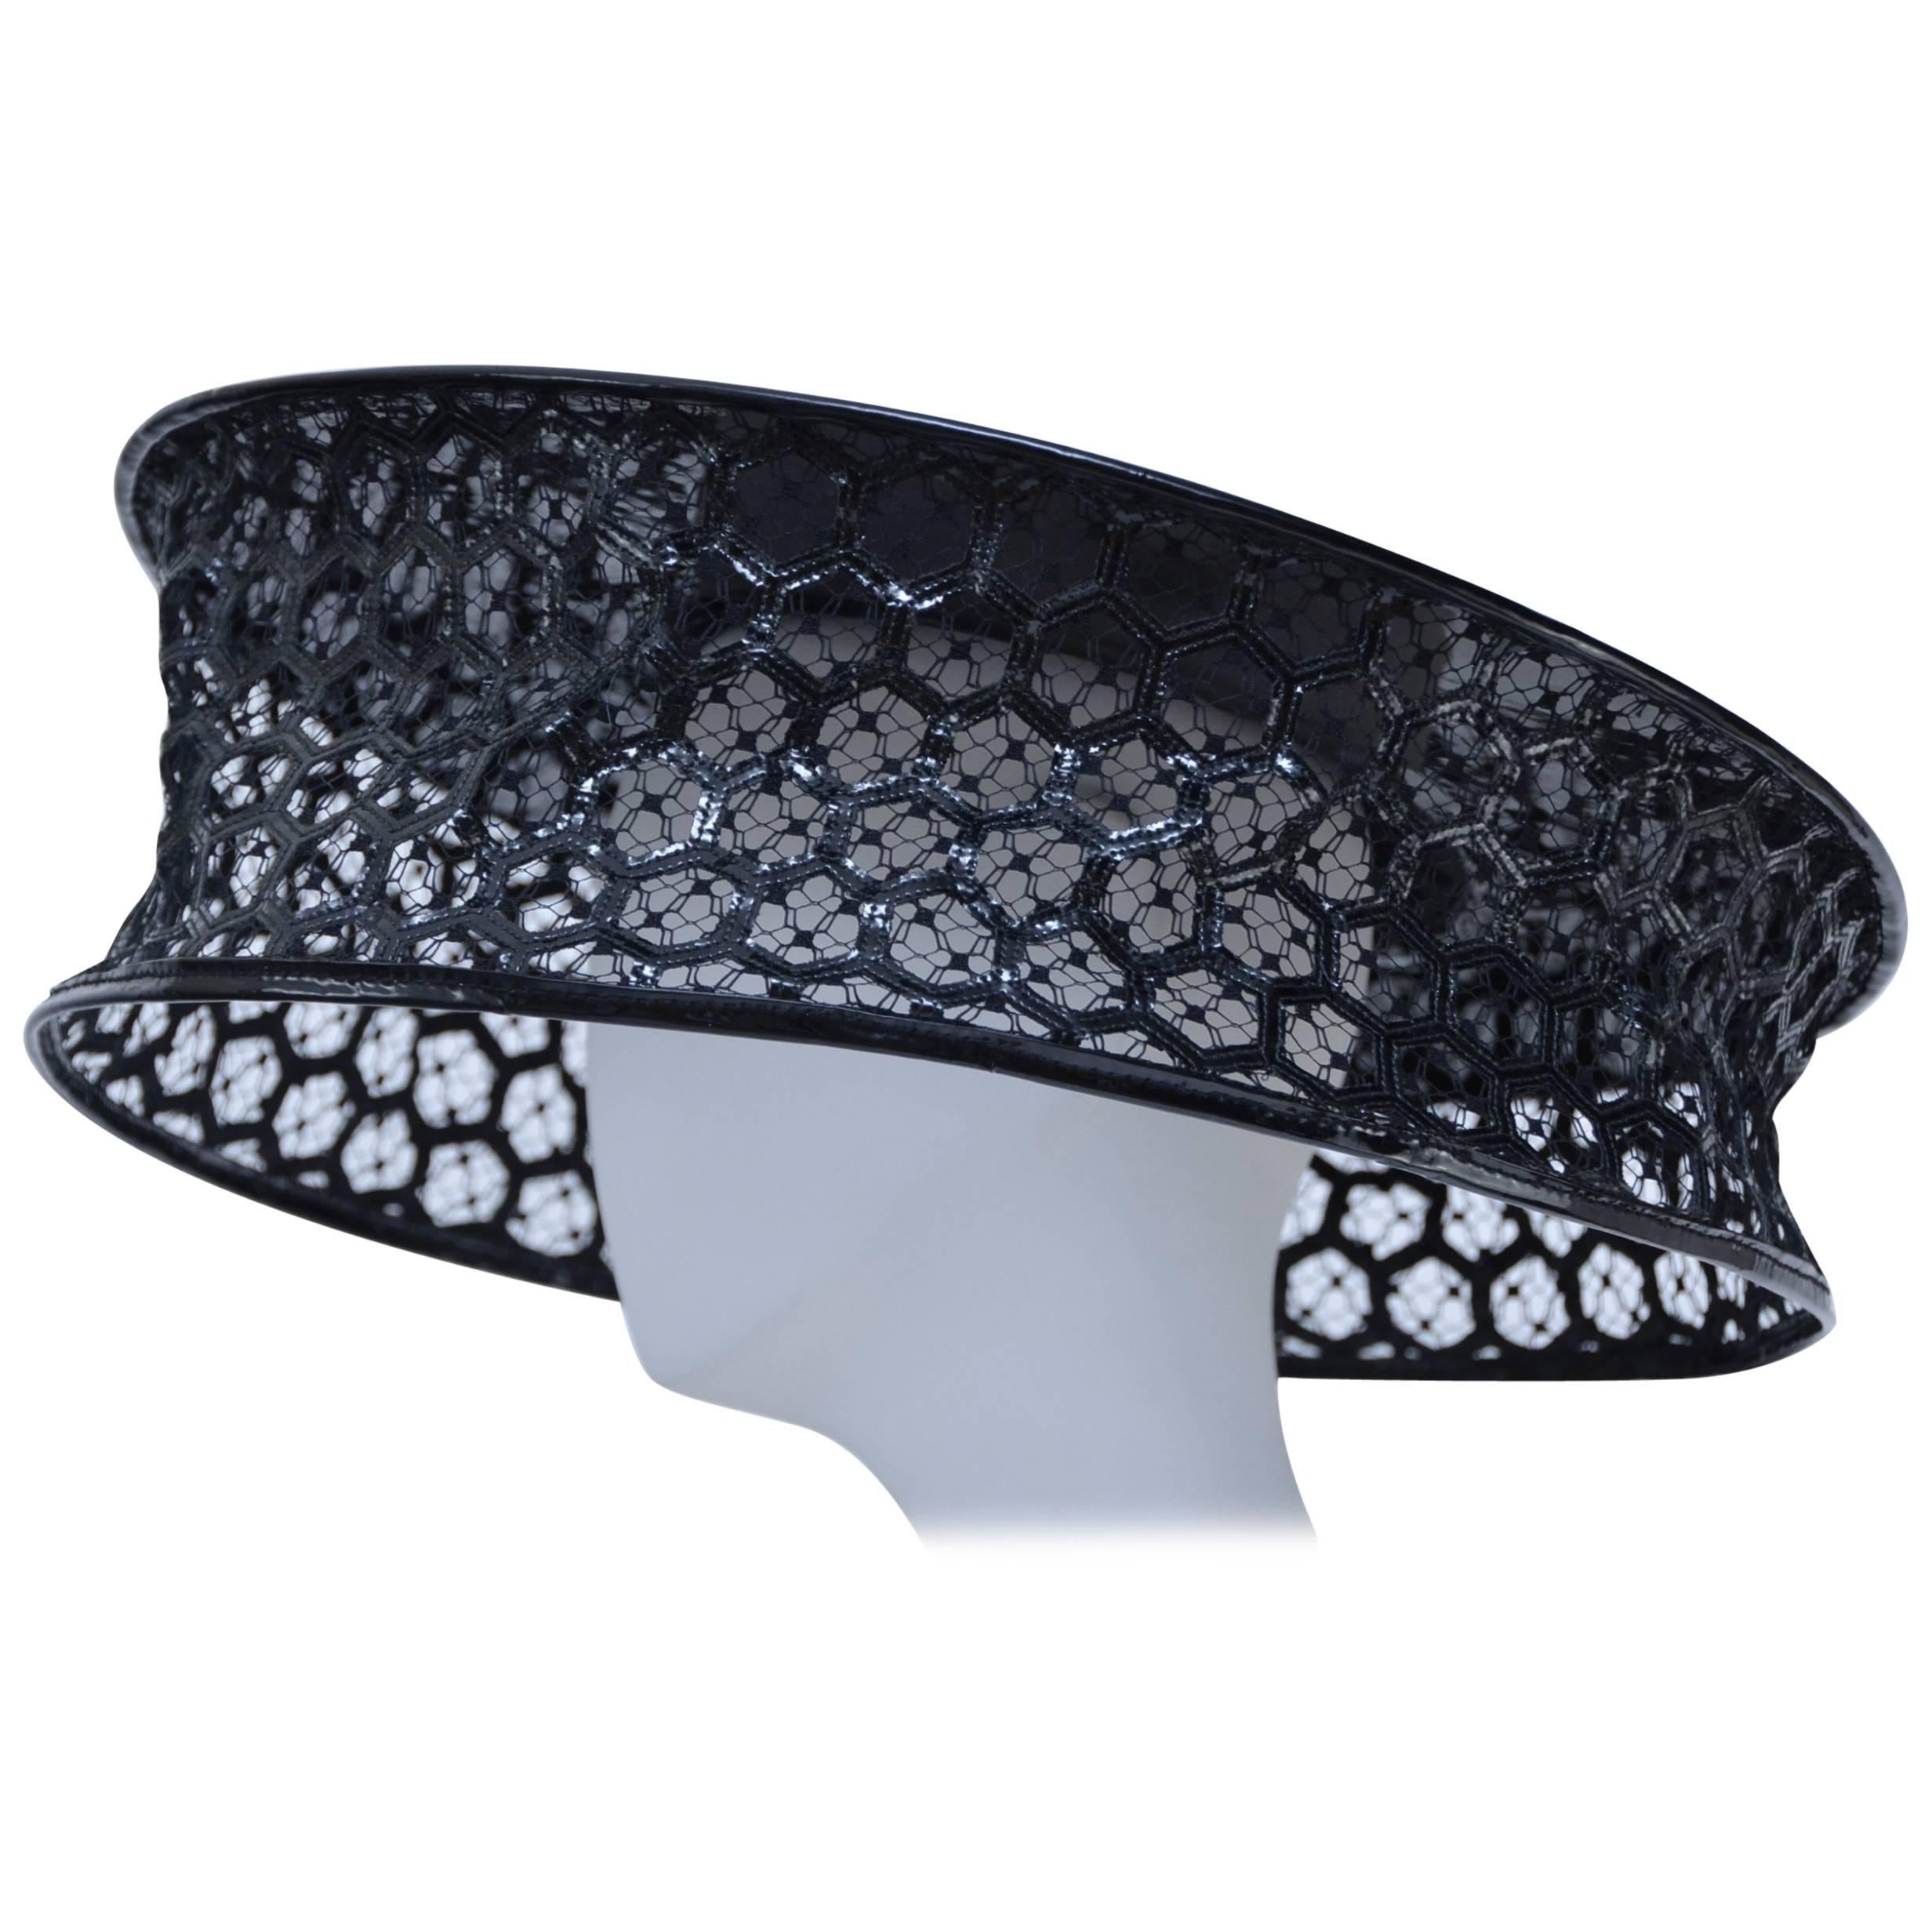 Wearable Art Alexander McQueen Runway  Beekeeper Hat  2013  New   S